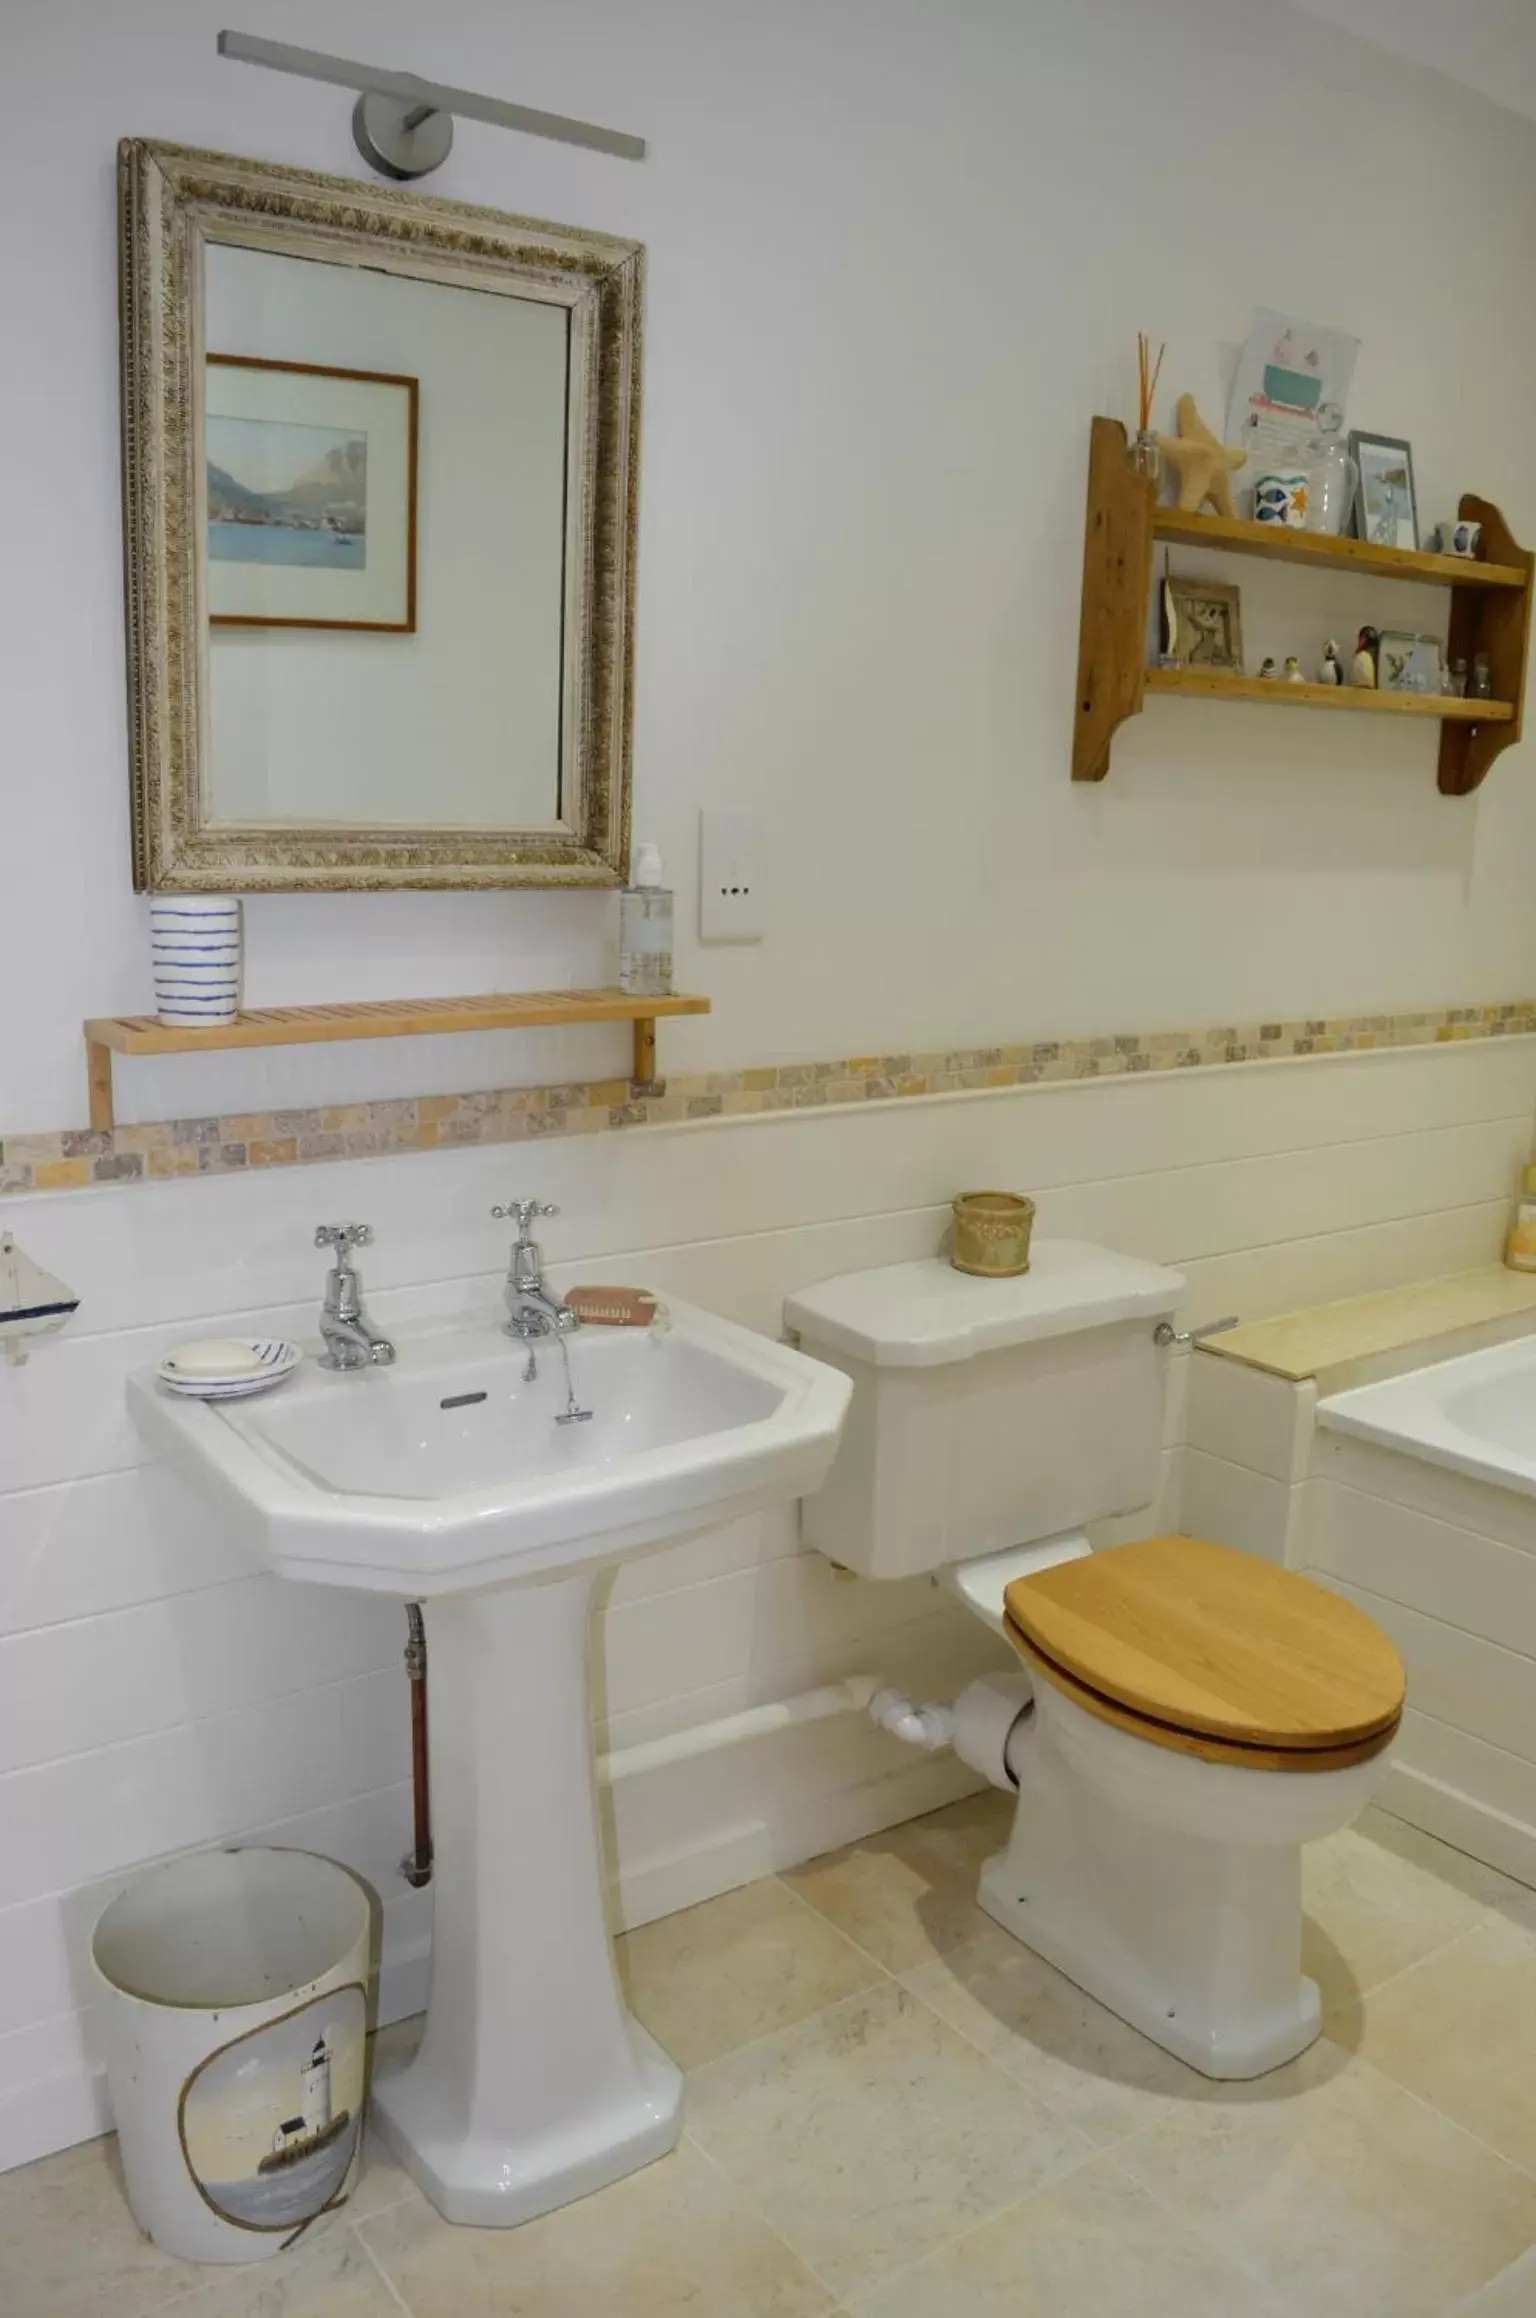 Bathroom in Stroud House